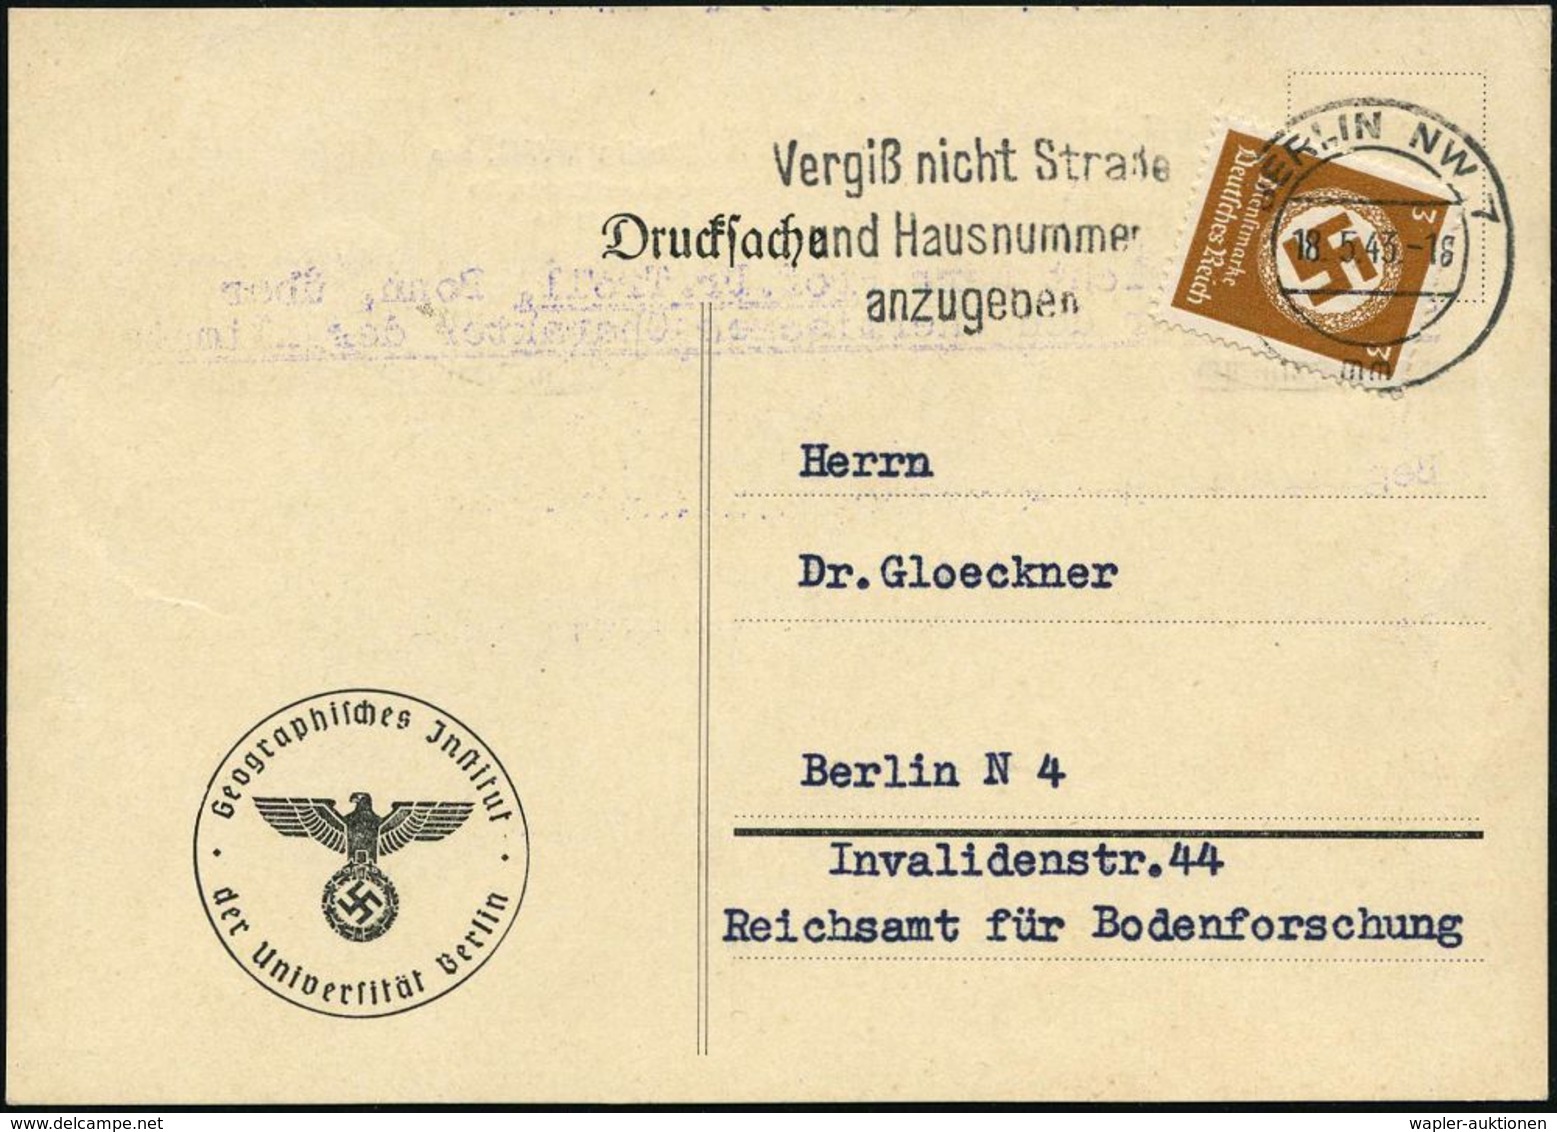 GEOGRAFIE / LANDKARTEN : Berlin NW 7 1943 (18.5.) Dienst-Kt.: Geographisches Jnstitut/der Universität Berlin (NS-Adler)  - Géographie